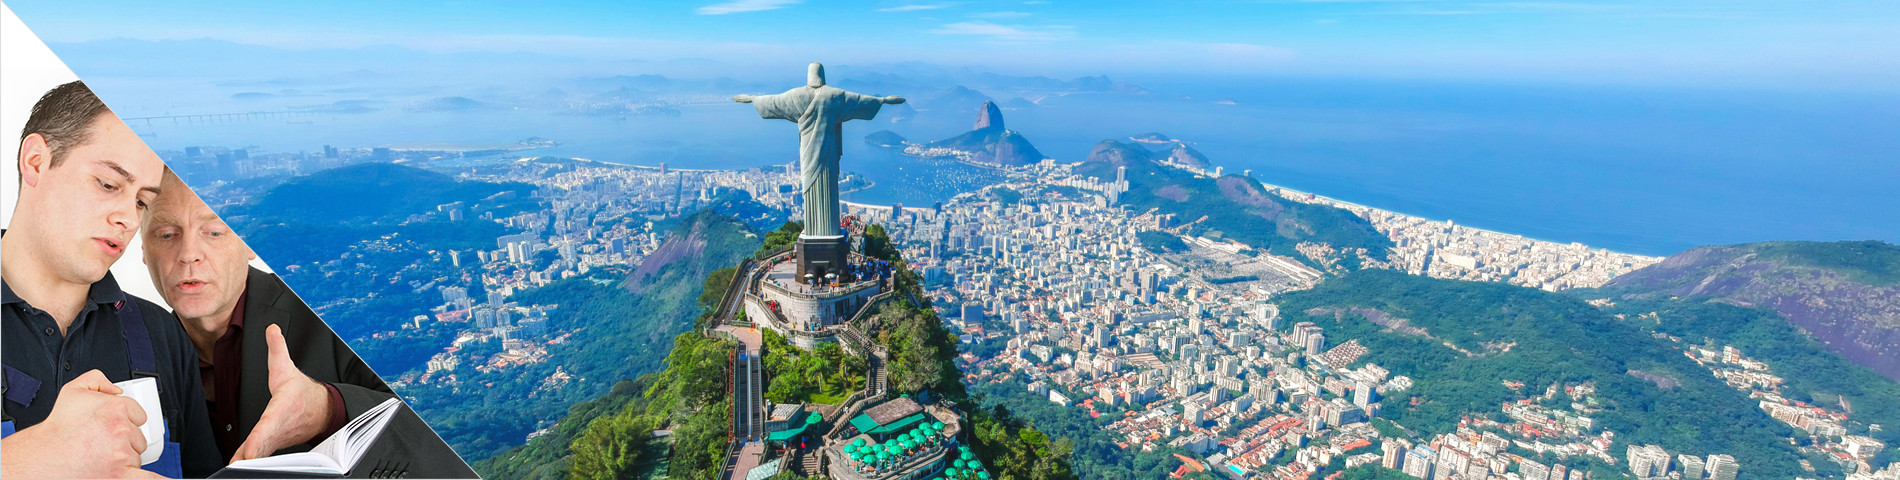 ประเทศบราซิล - หลักสูตรแบบตัวต่อตัว